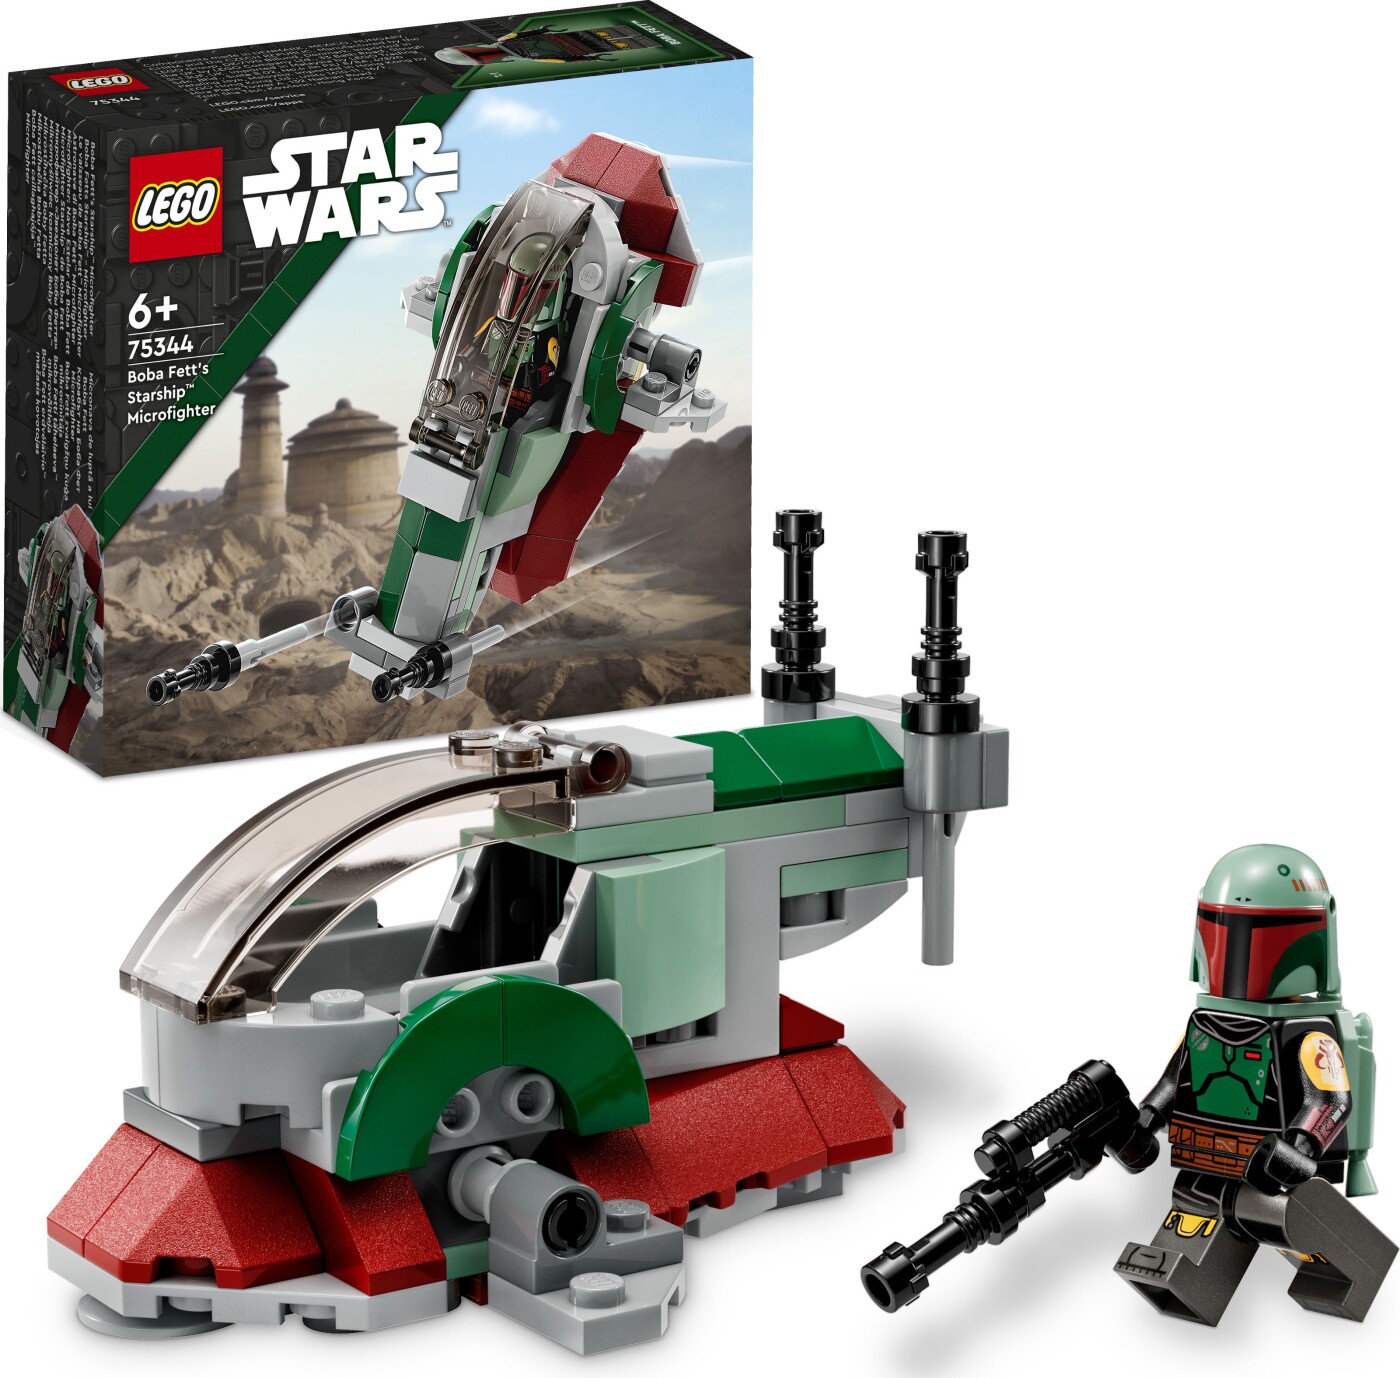 Billede af Lego Star Wars - Boba Fetts Starship Microfighter - 75344